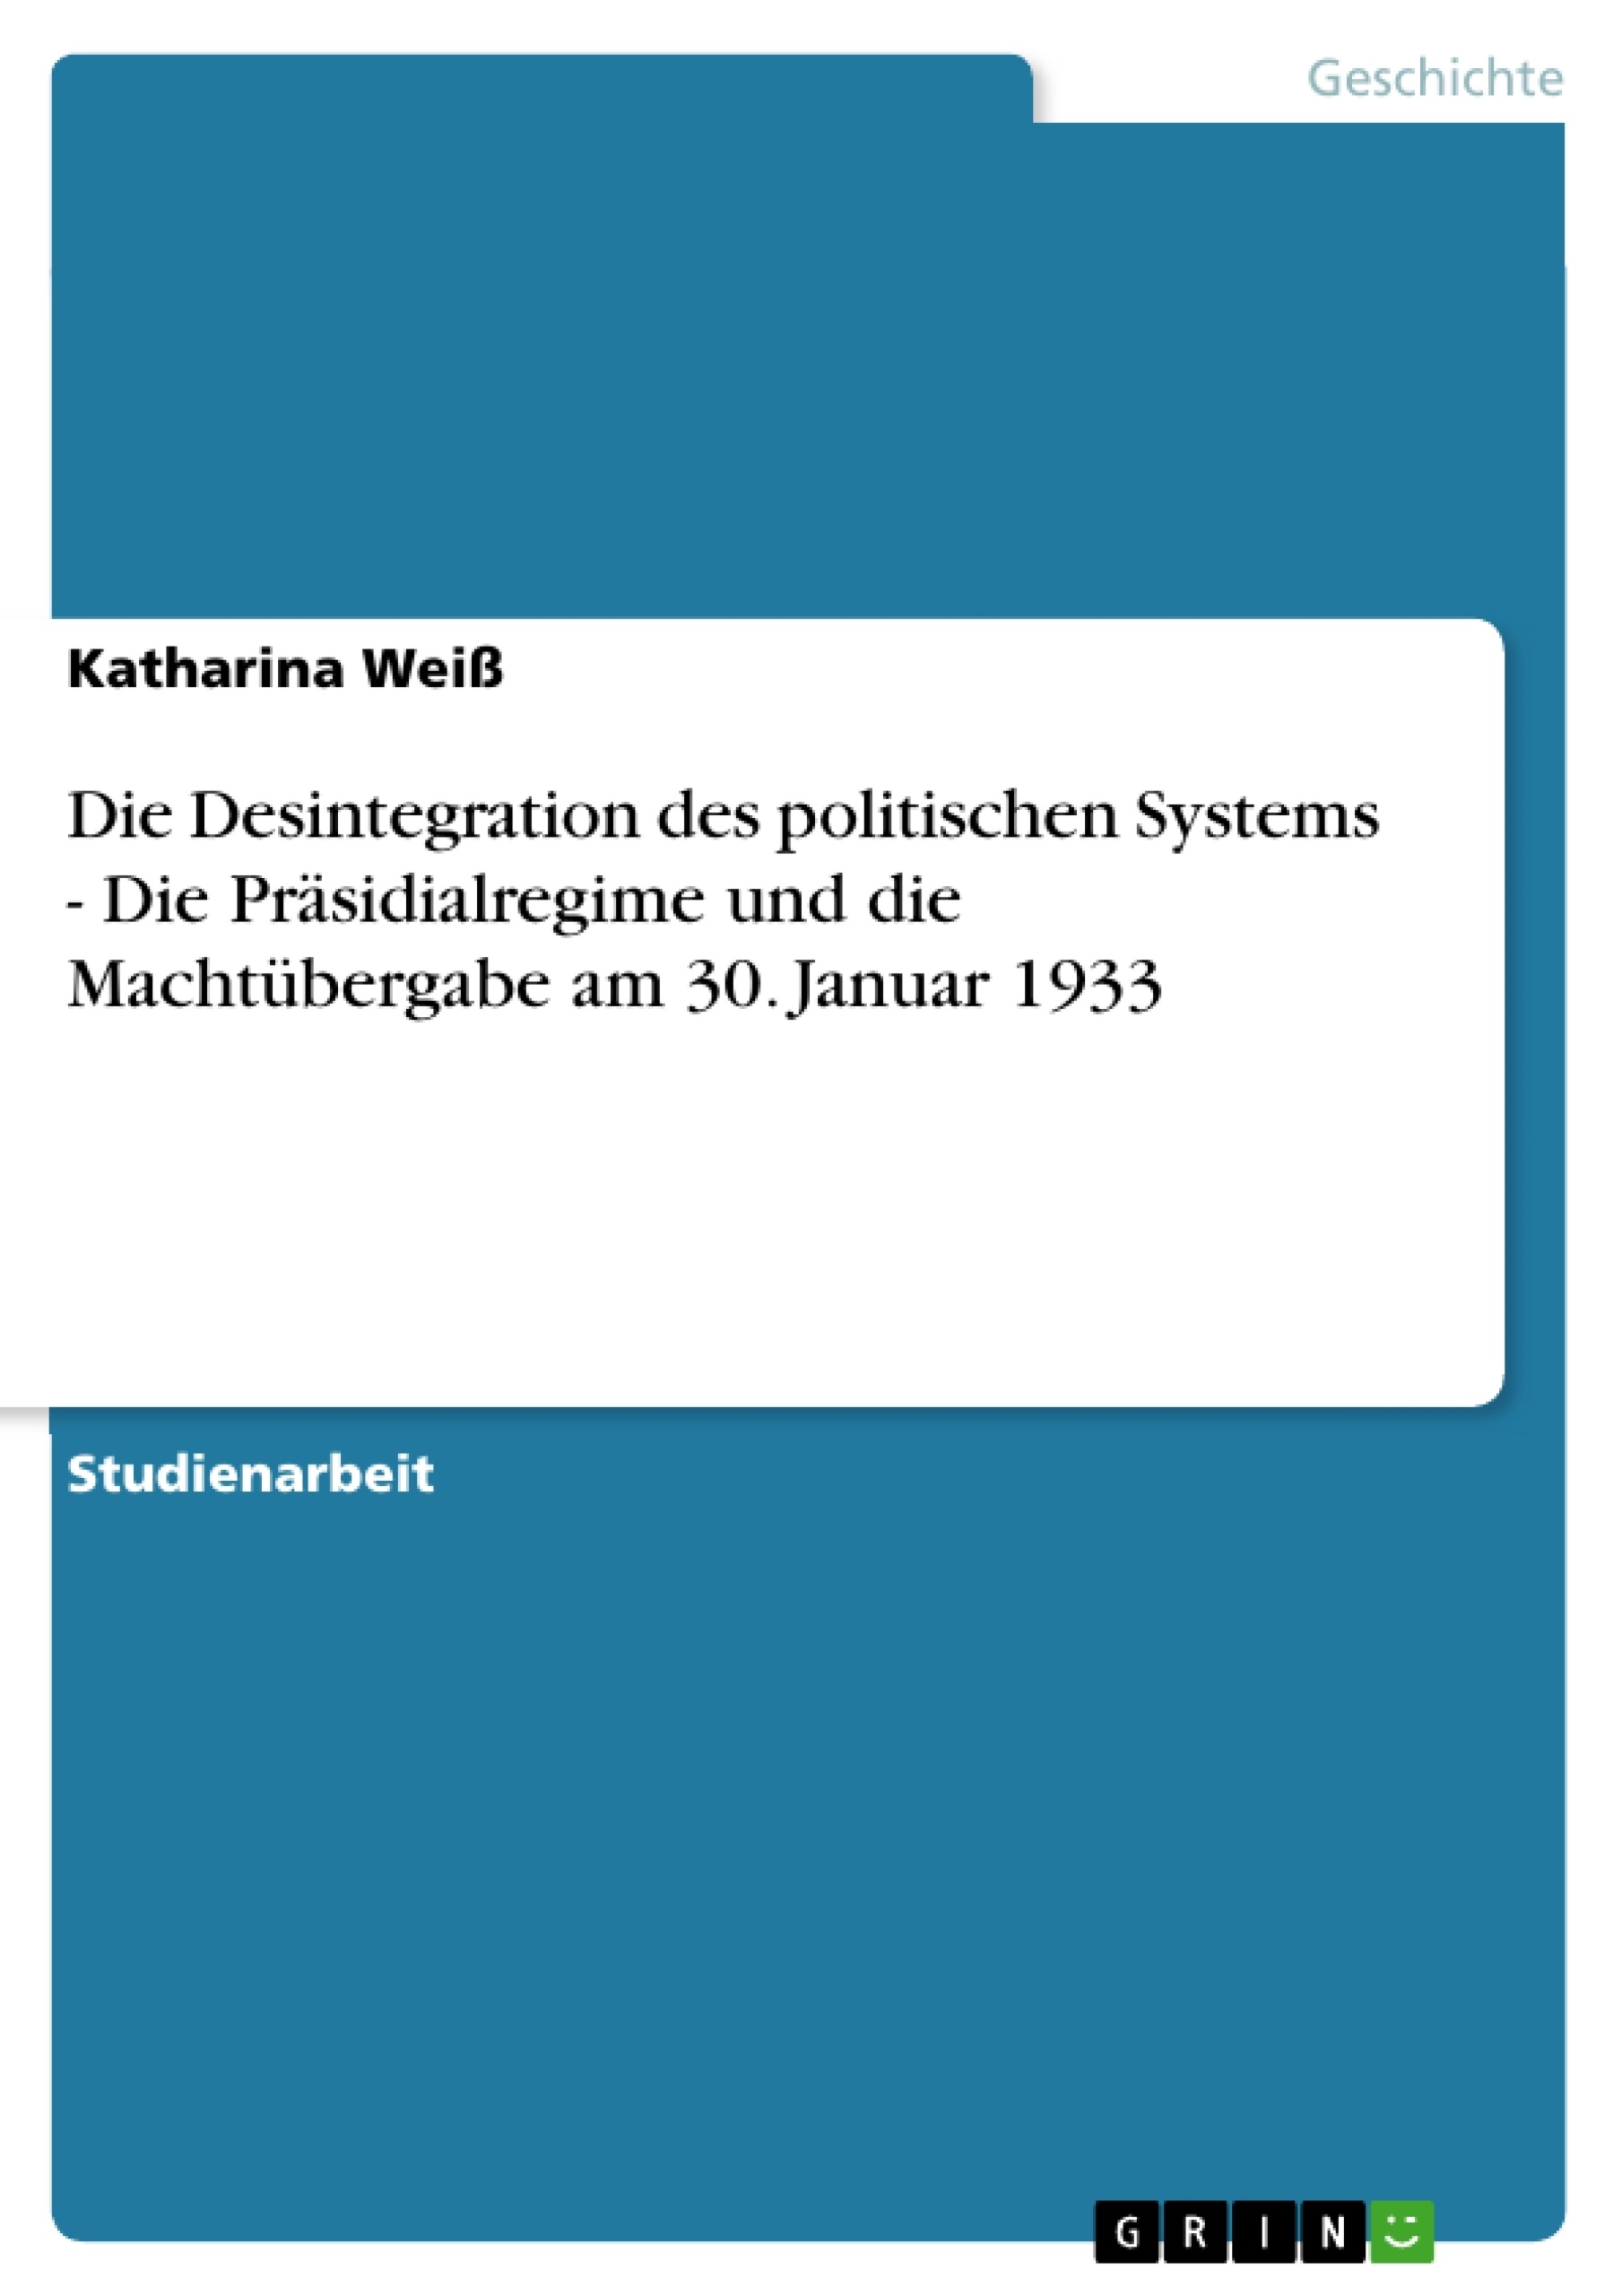 Titel: Die Desintegration des politischen Systems - Die Präsidialregime und die Machtübergabe am 30. Januar 1933 